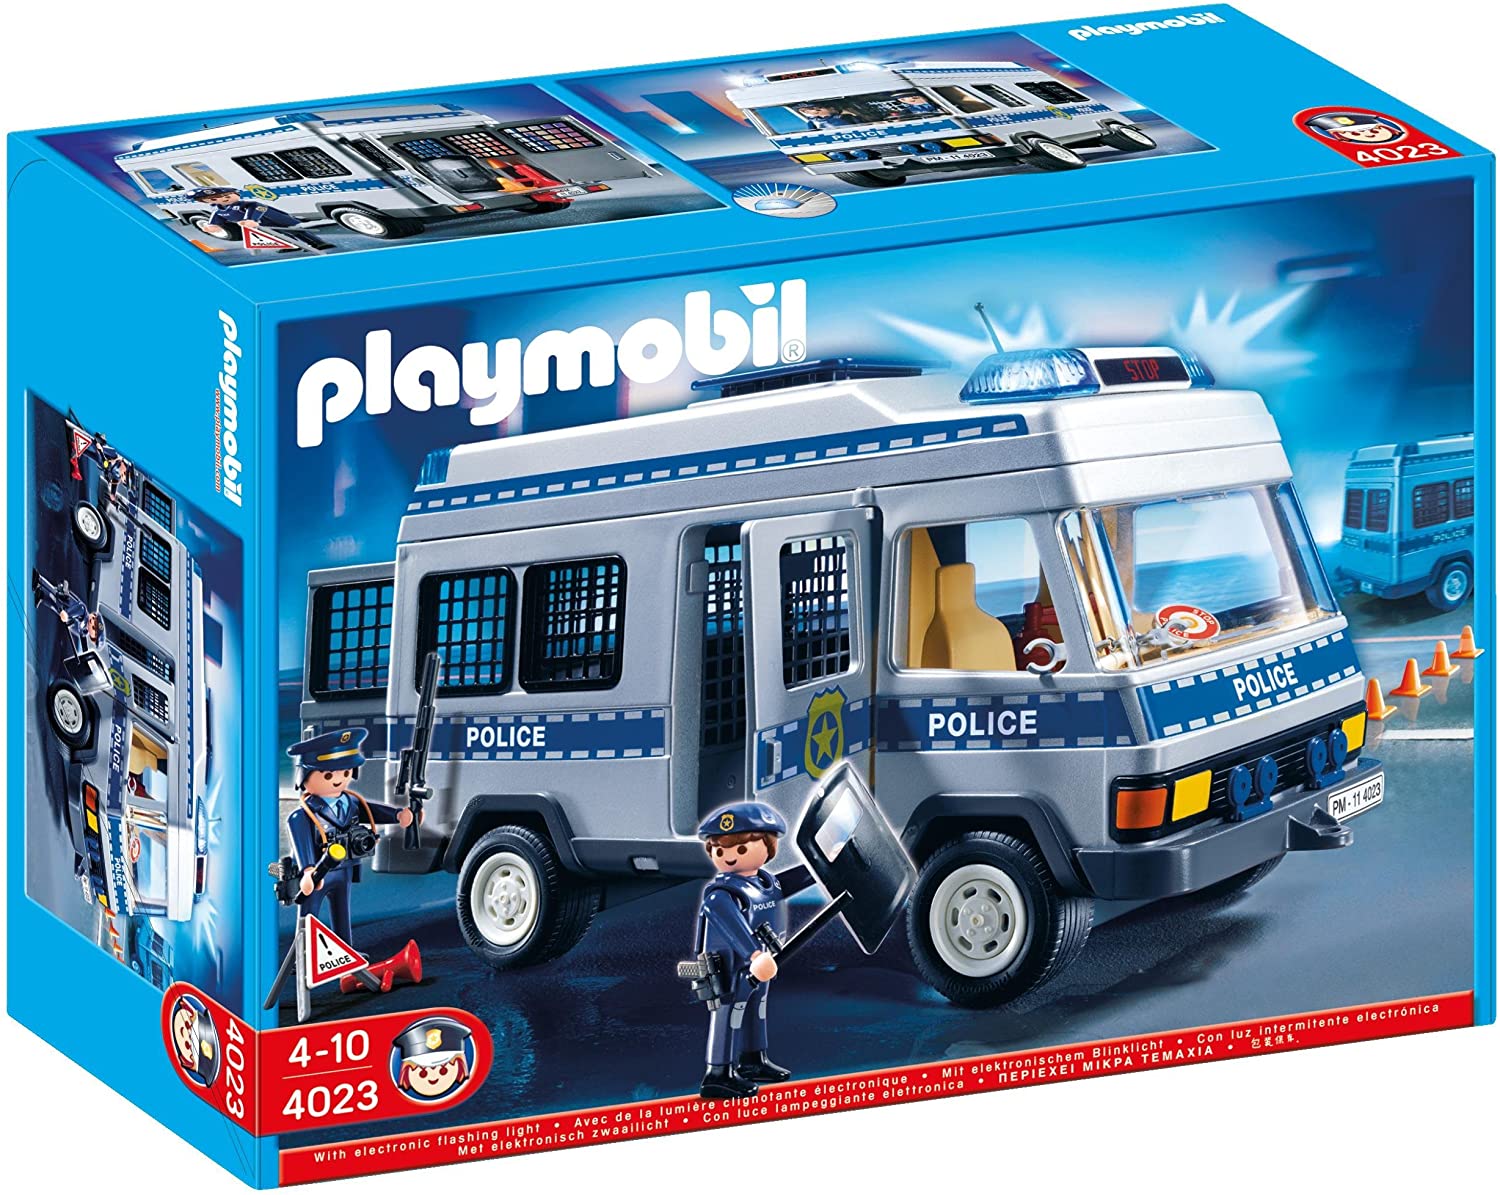 Playmobil 4023 Van Police Officers – Multi-Coloured TopToy